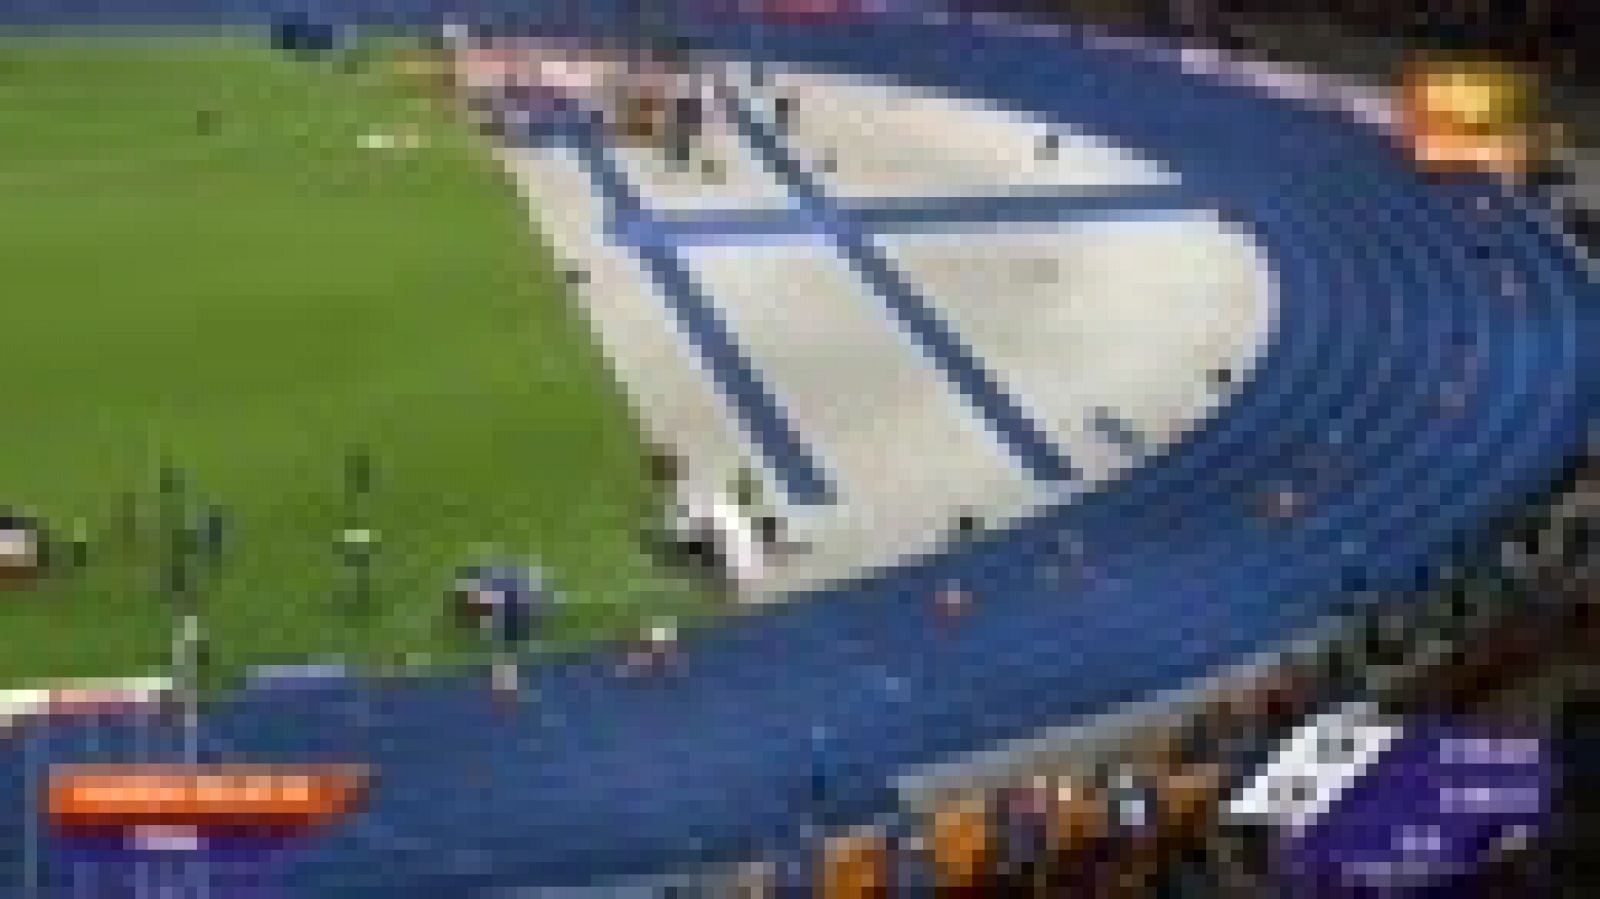 European Championships. Bronce del relevo 4x400m masculino